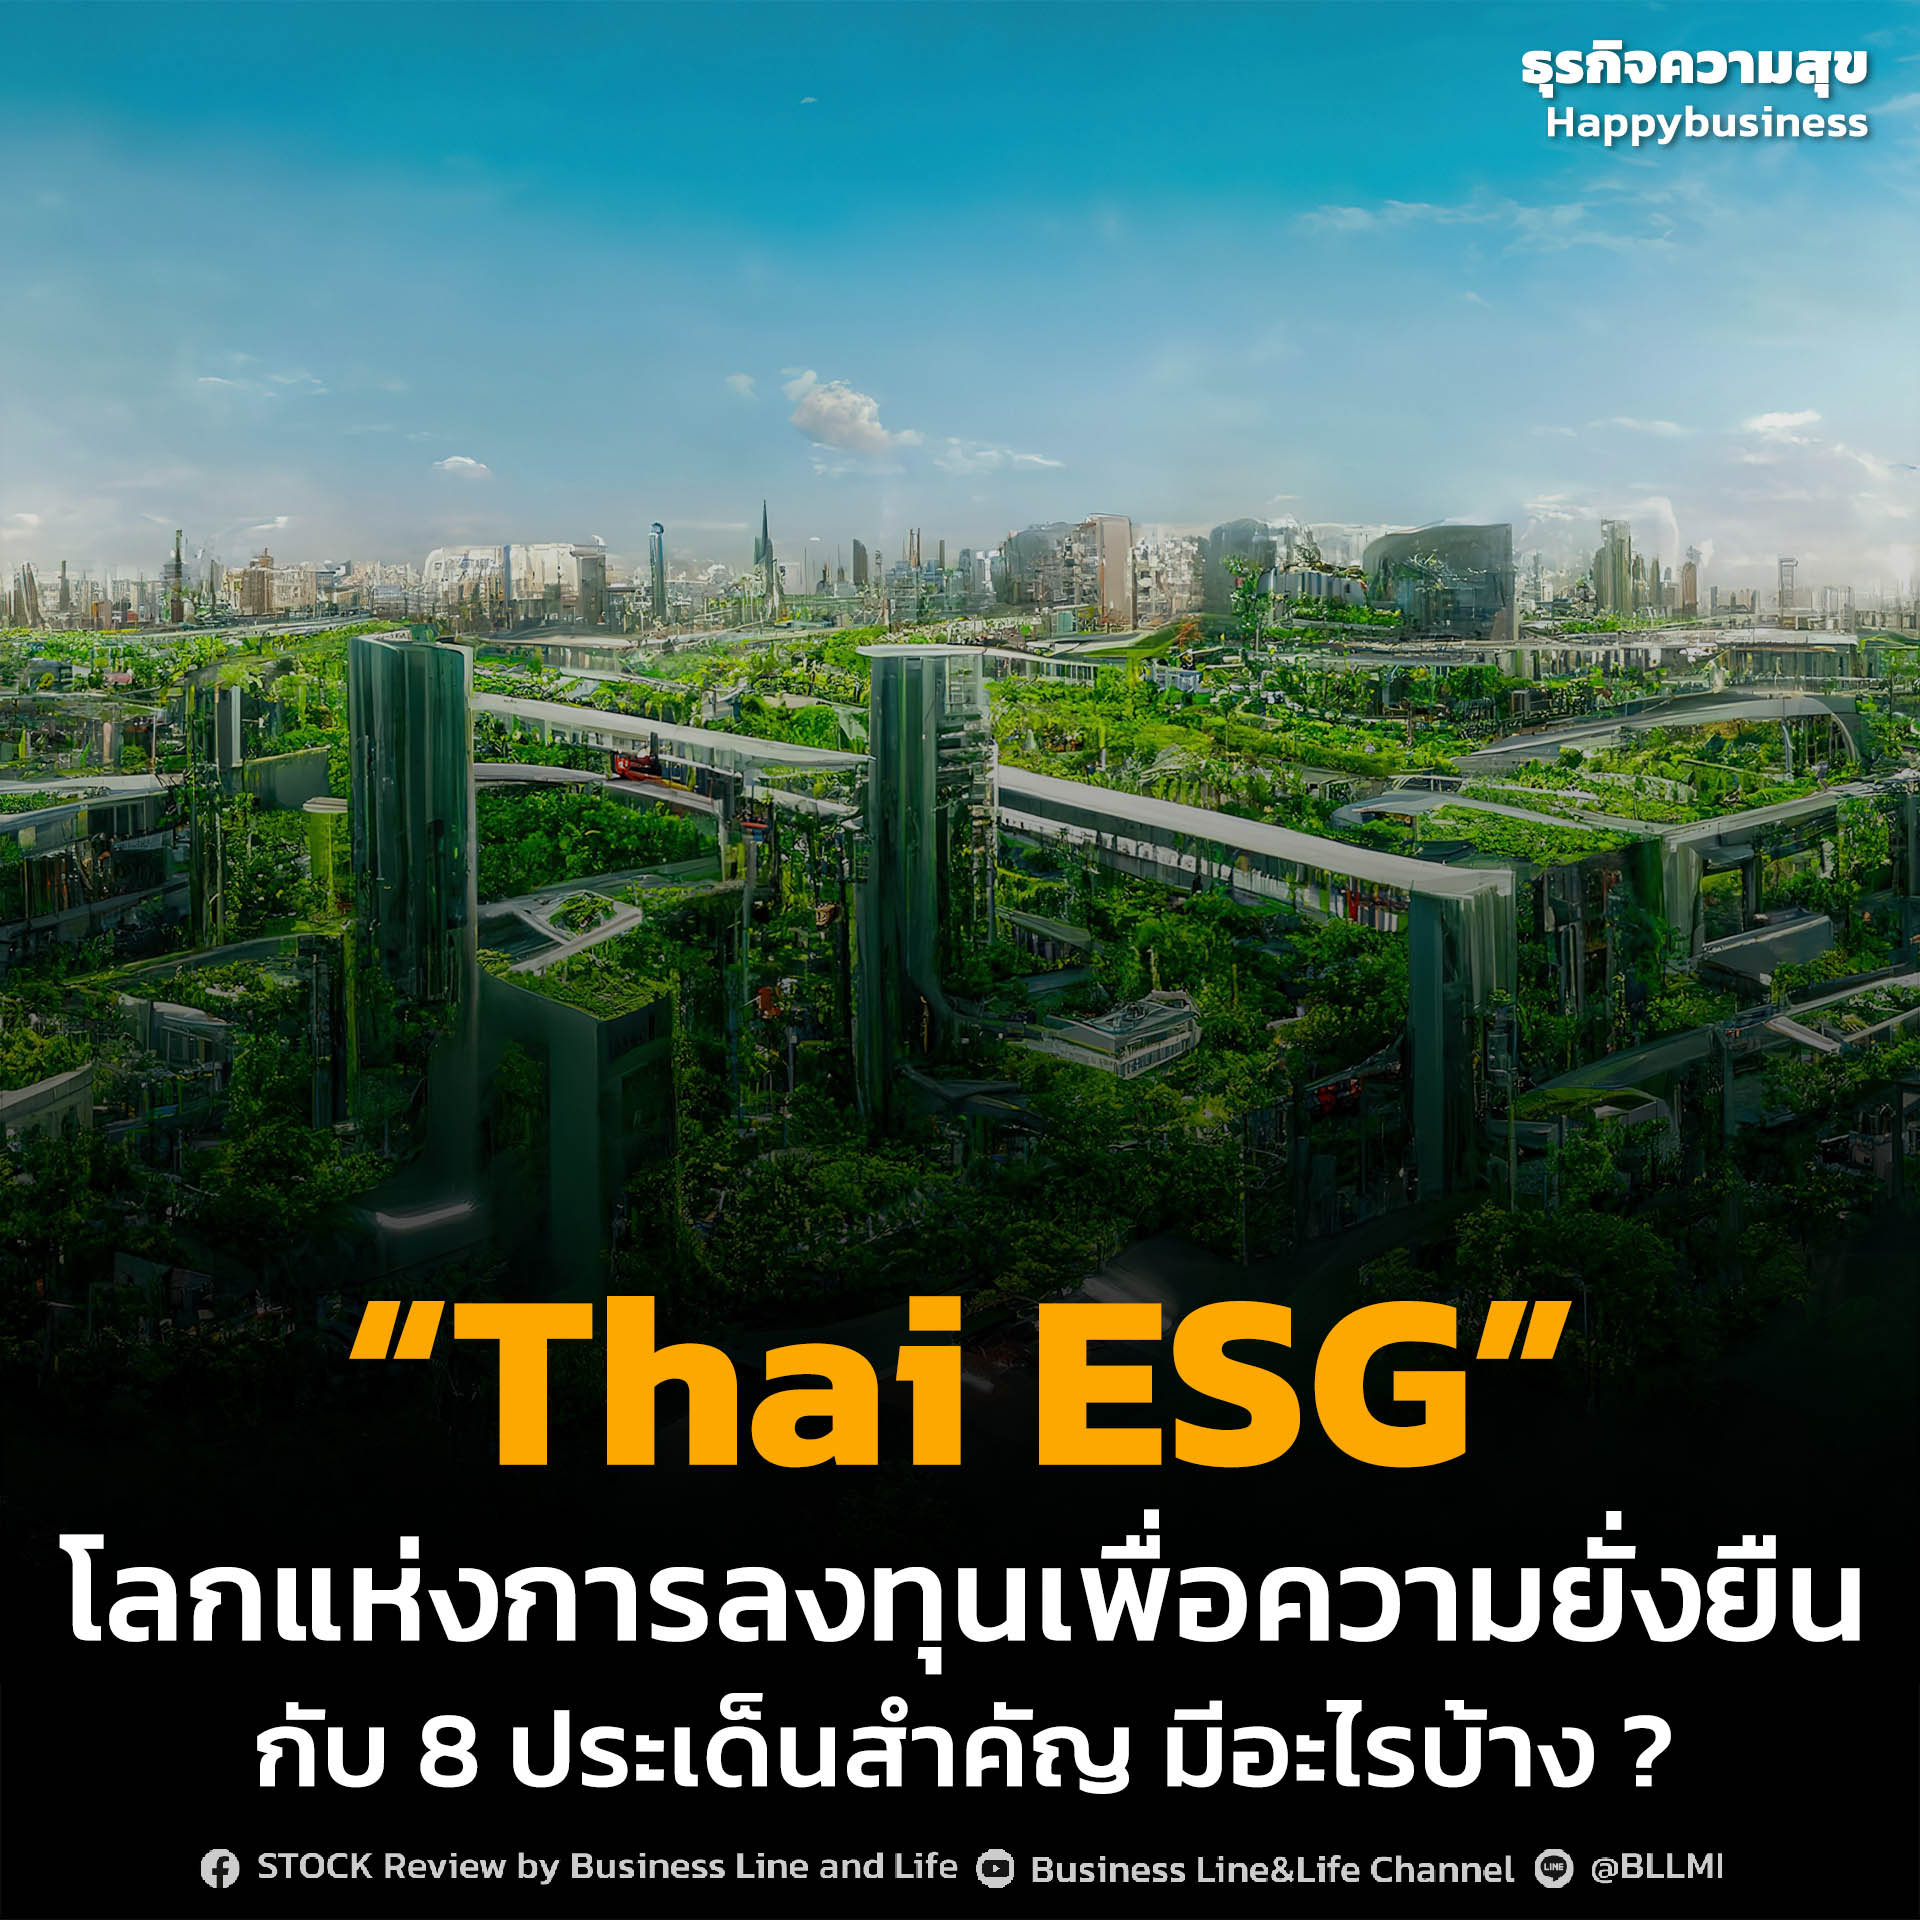 “Thai ESG” โลกแห่งการลงทุนเพื่อความยั่งยืน กับ 8 ประเด็นสำคัญ มีอะไรบ้าง ?